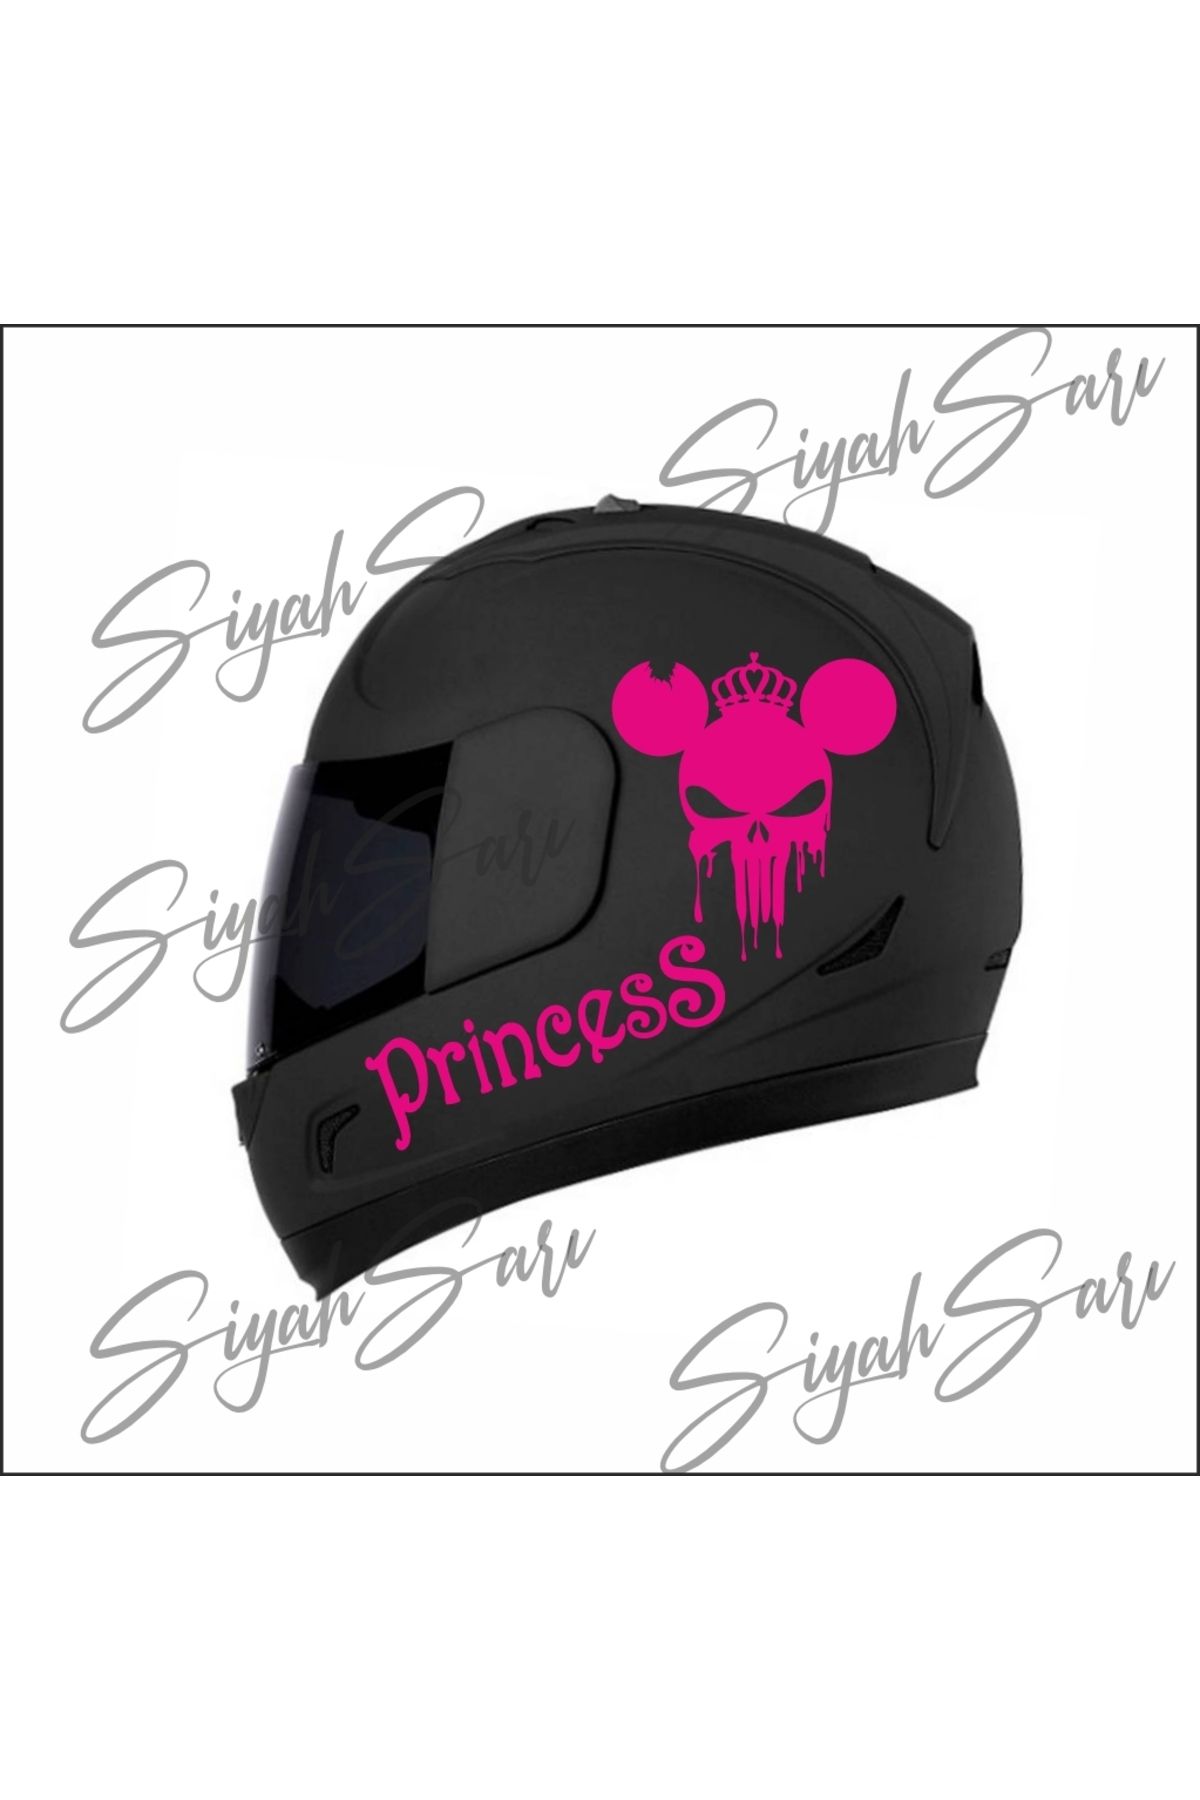 S&S HEDİYELİK EŞYA Princess Kask Sticker Depo Kapağı Sticker Araba Araç Oto Otomobil Motorsiklet motor Sticker